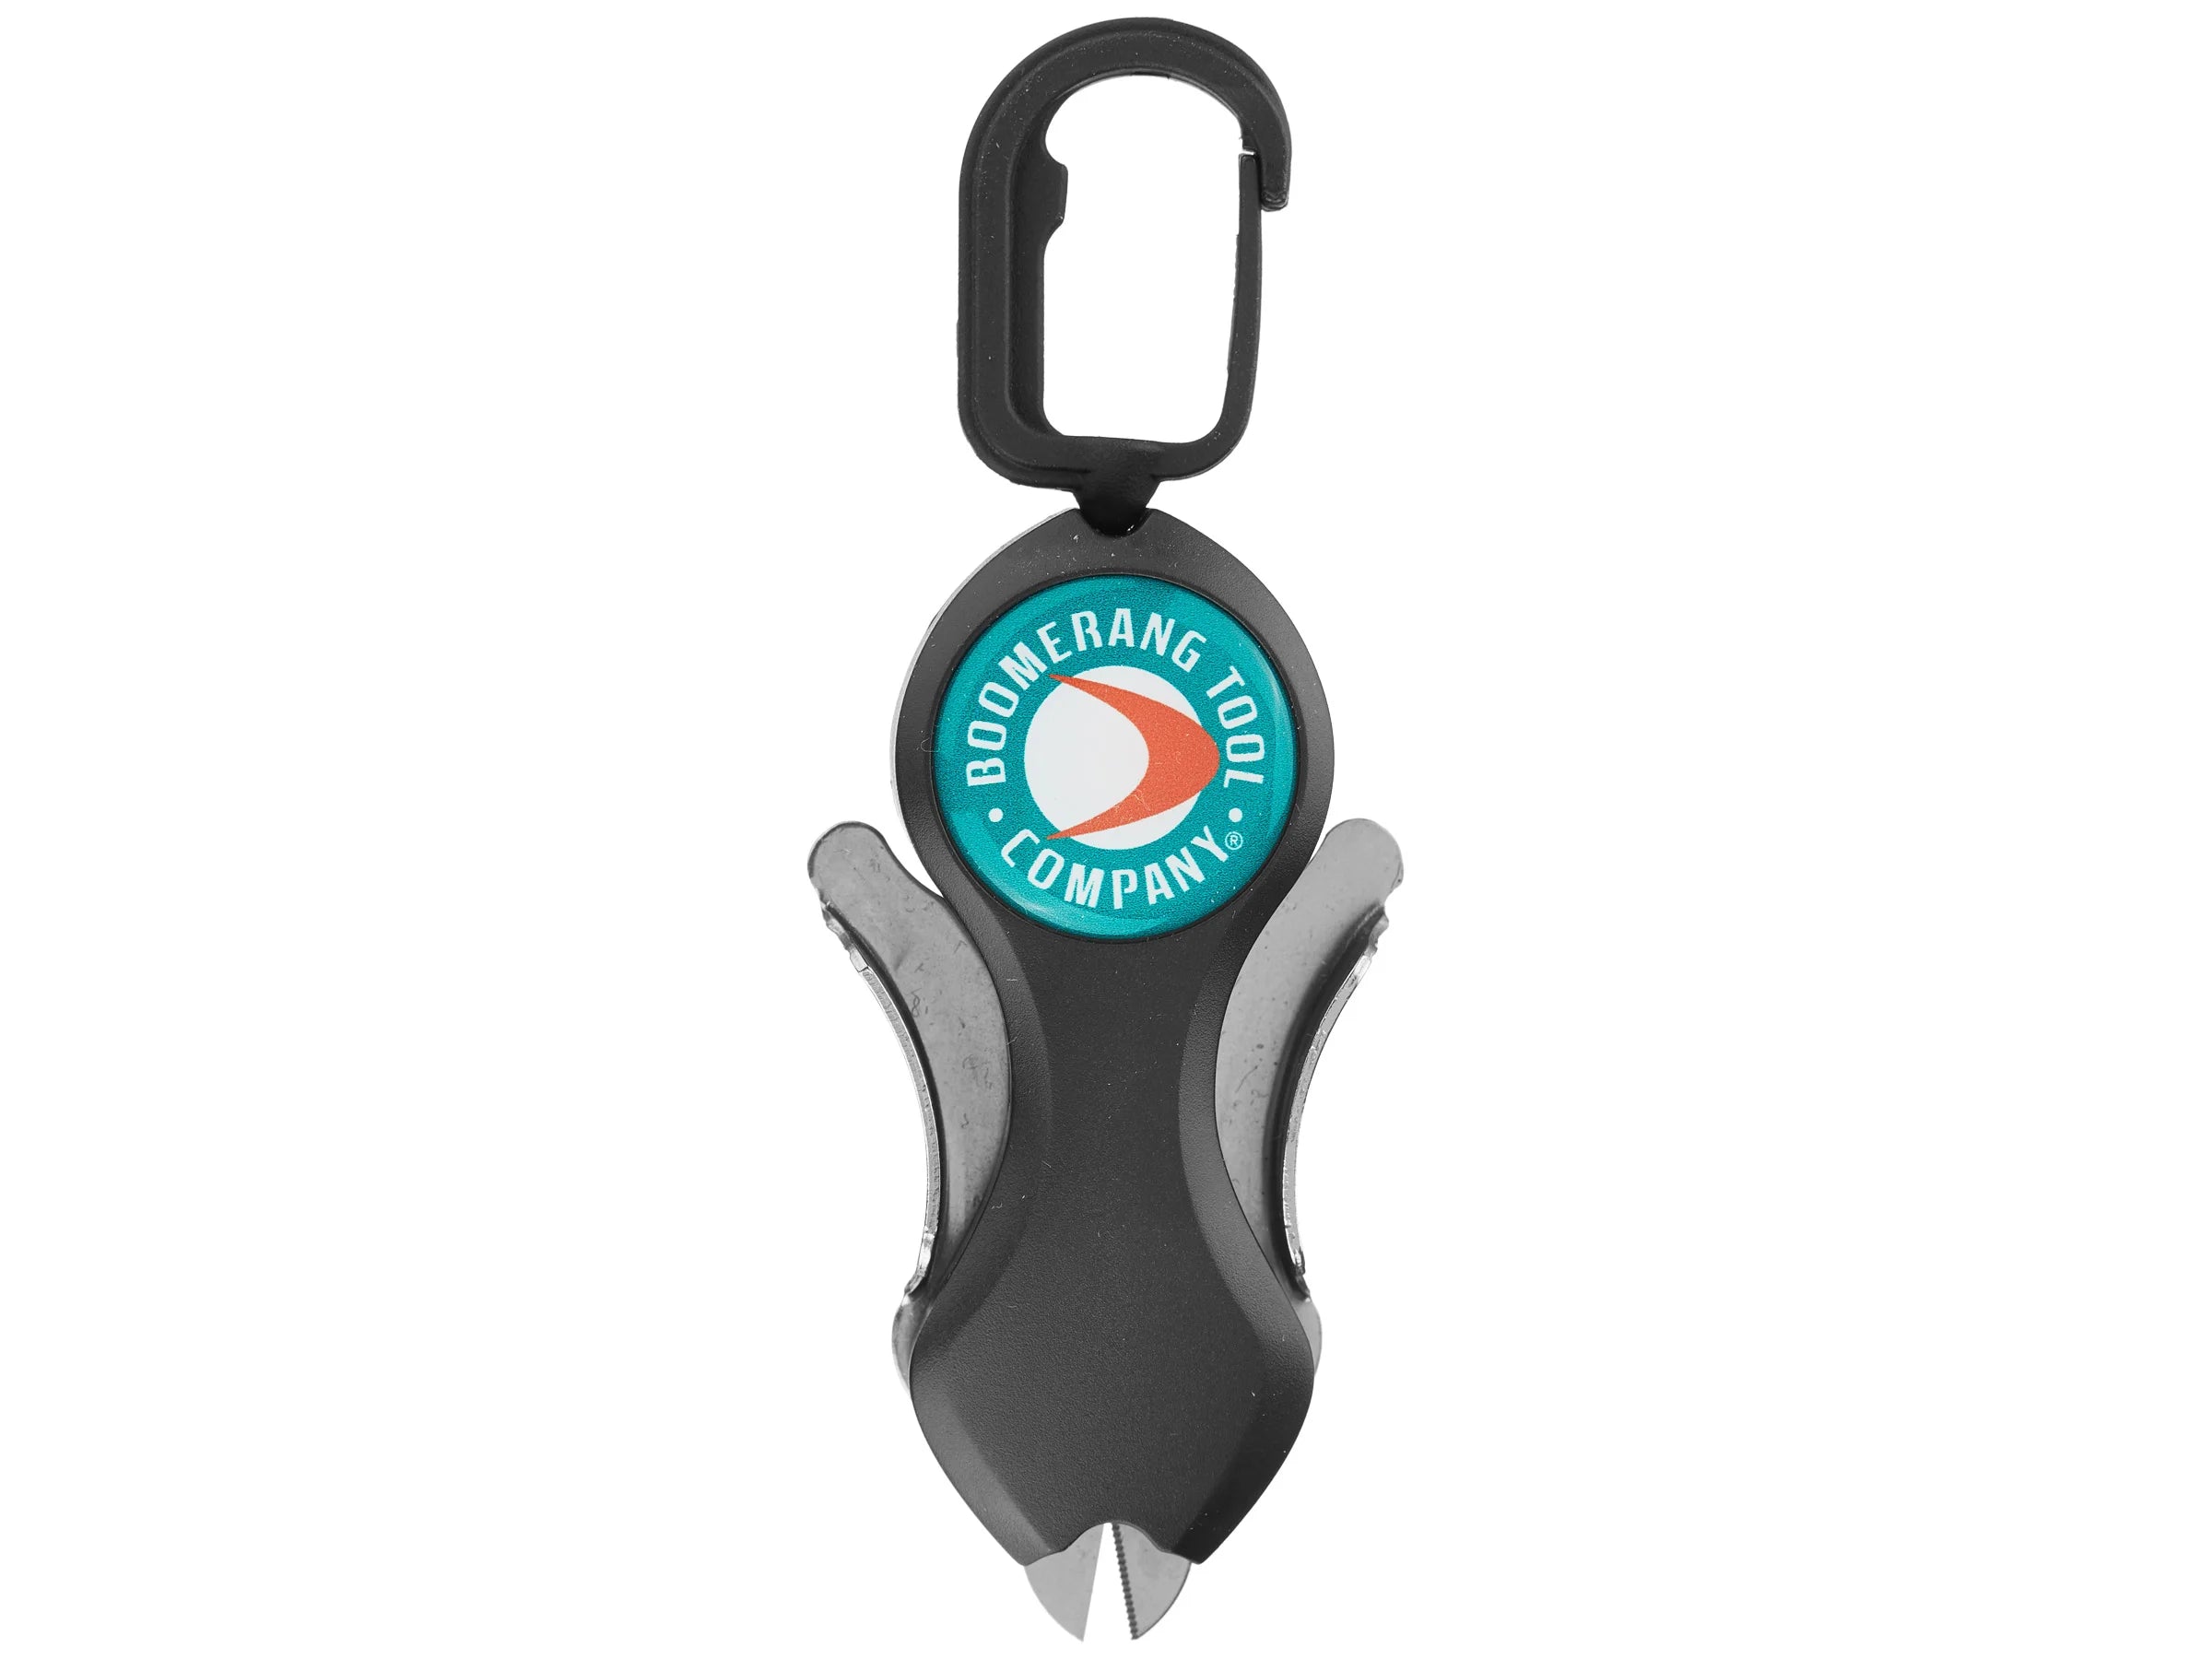 Società di utensili Boomerang, Taglierina per linee di taglio Boomerang Tool Company